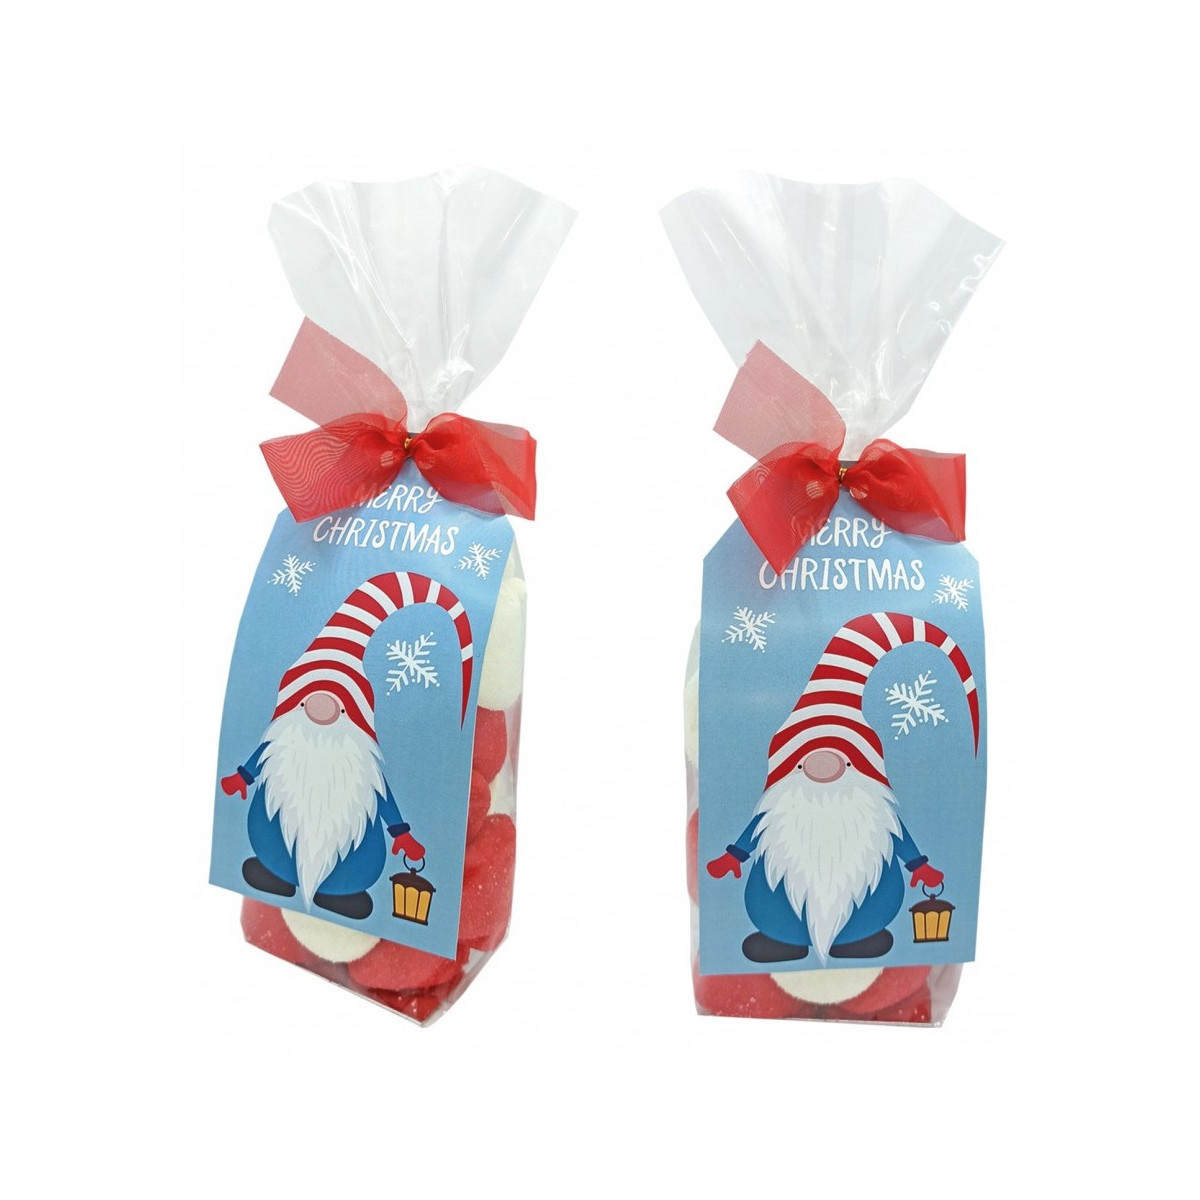 Bonbons dans un sac transparent avec carte de vœux de noël